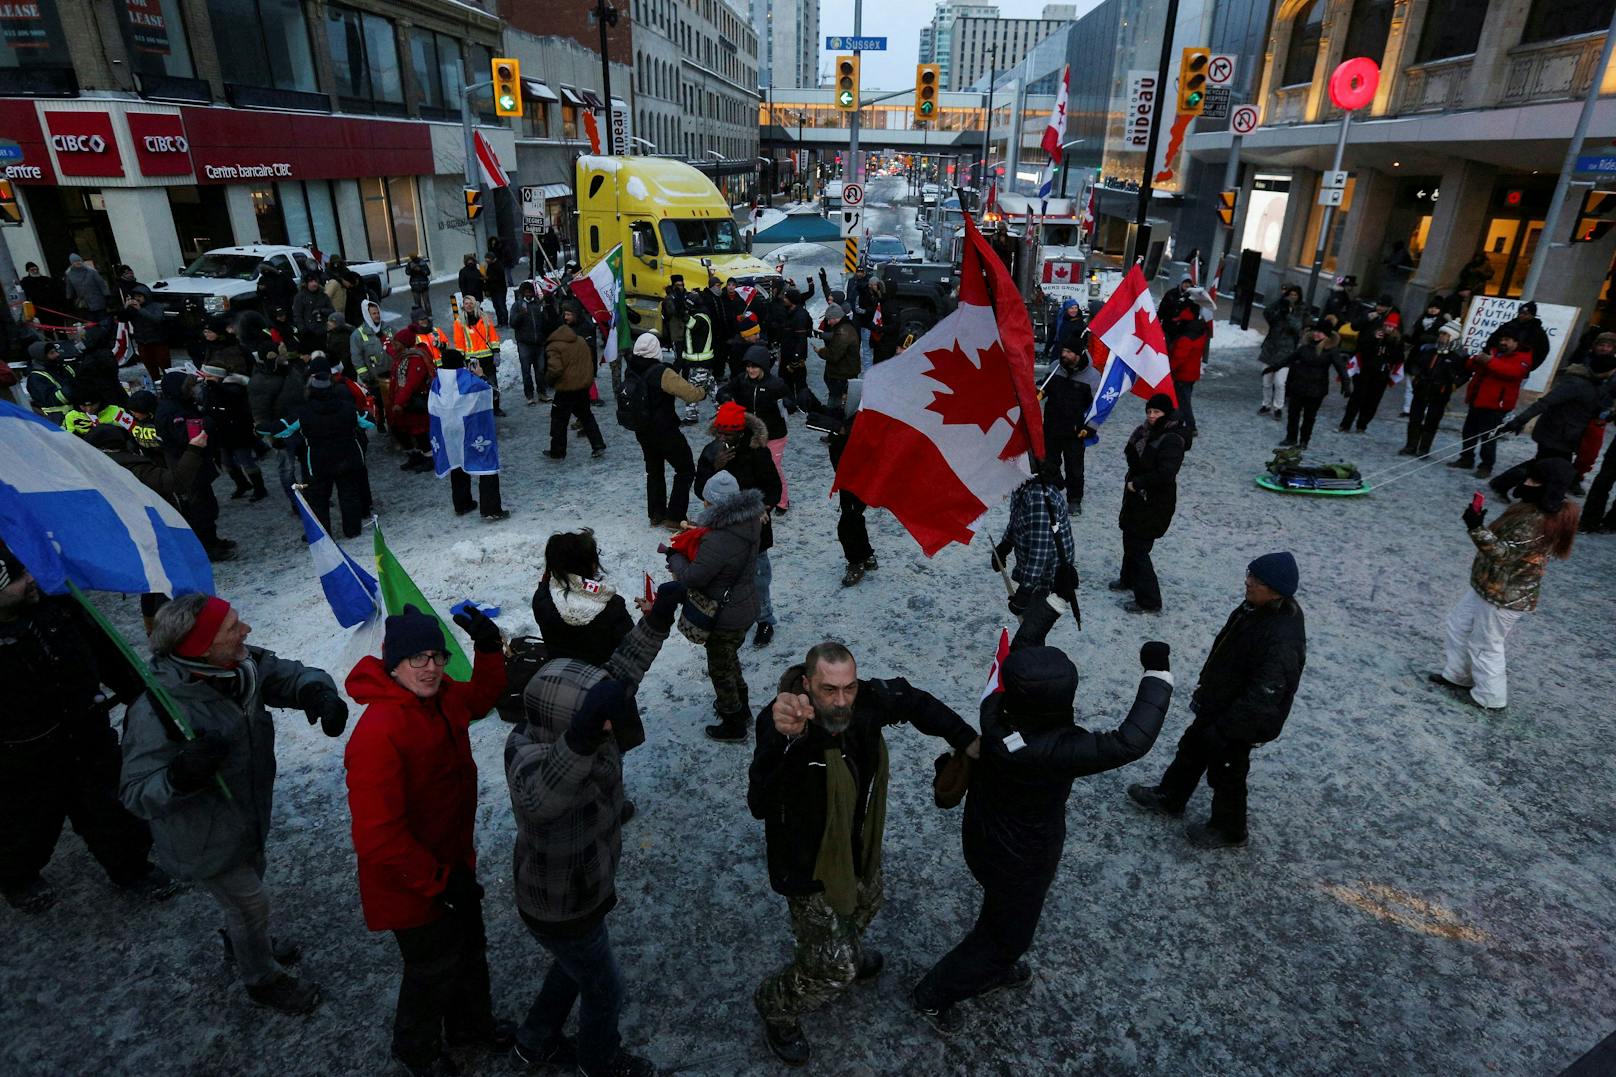 Polizei nimmt Chef der Corona-Blockade in Ottawa fest